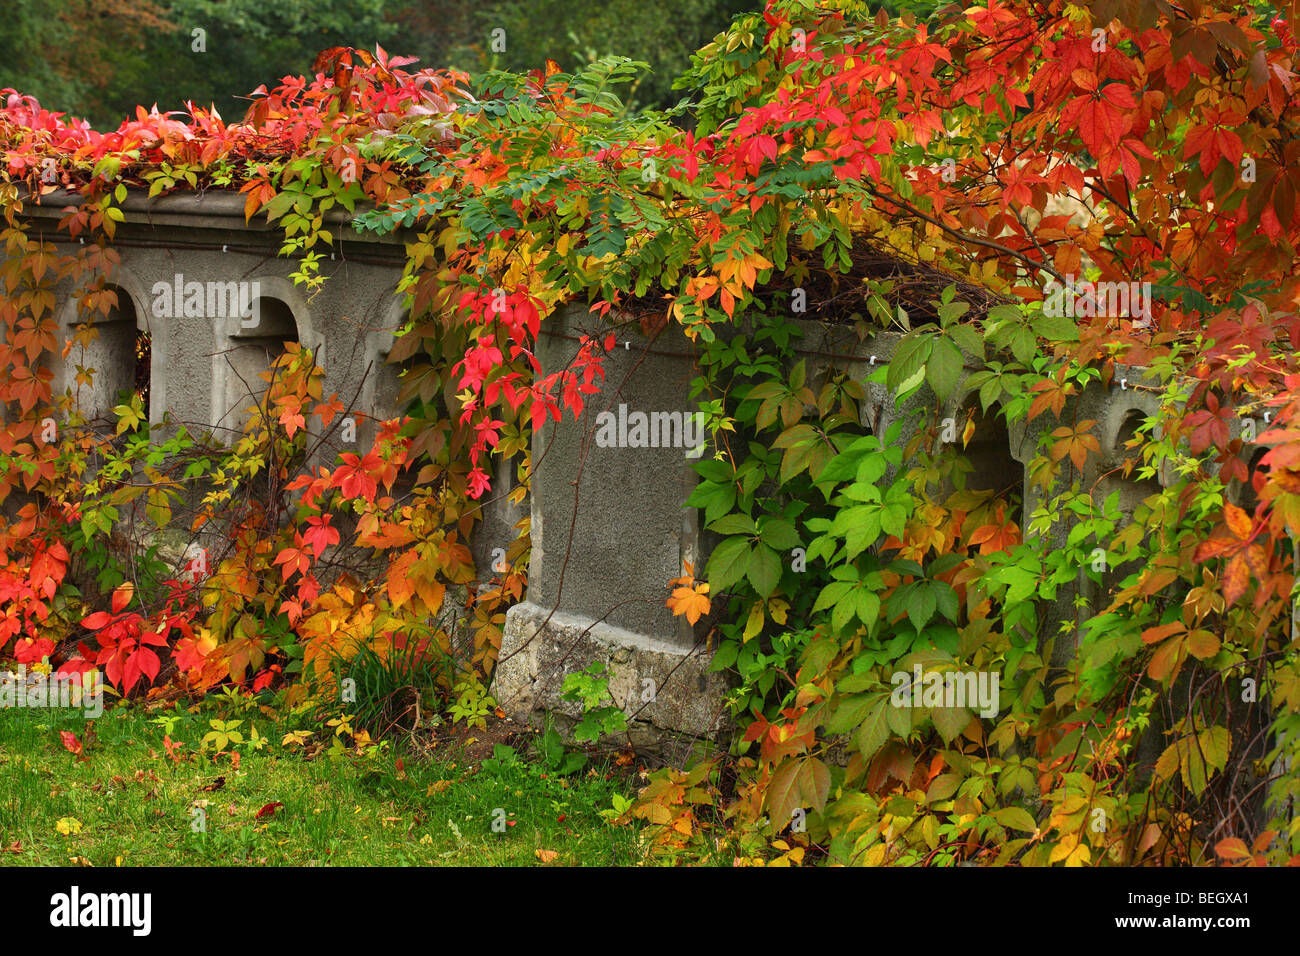 Balustrade envahies par la vigne vierge rouge tournant à l'automne Parthenocissus quinquefolia Banque D'Images